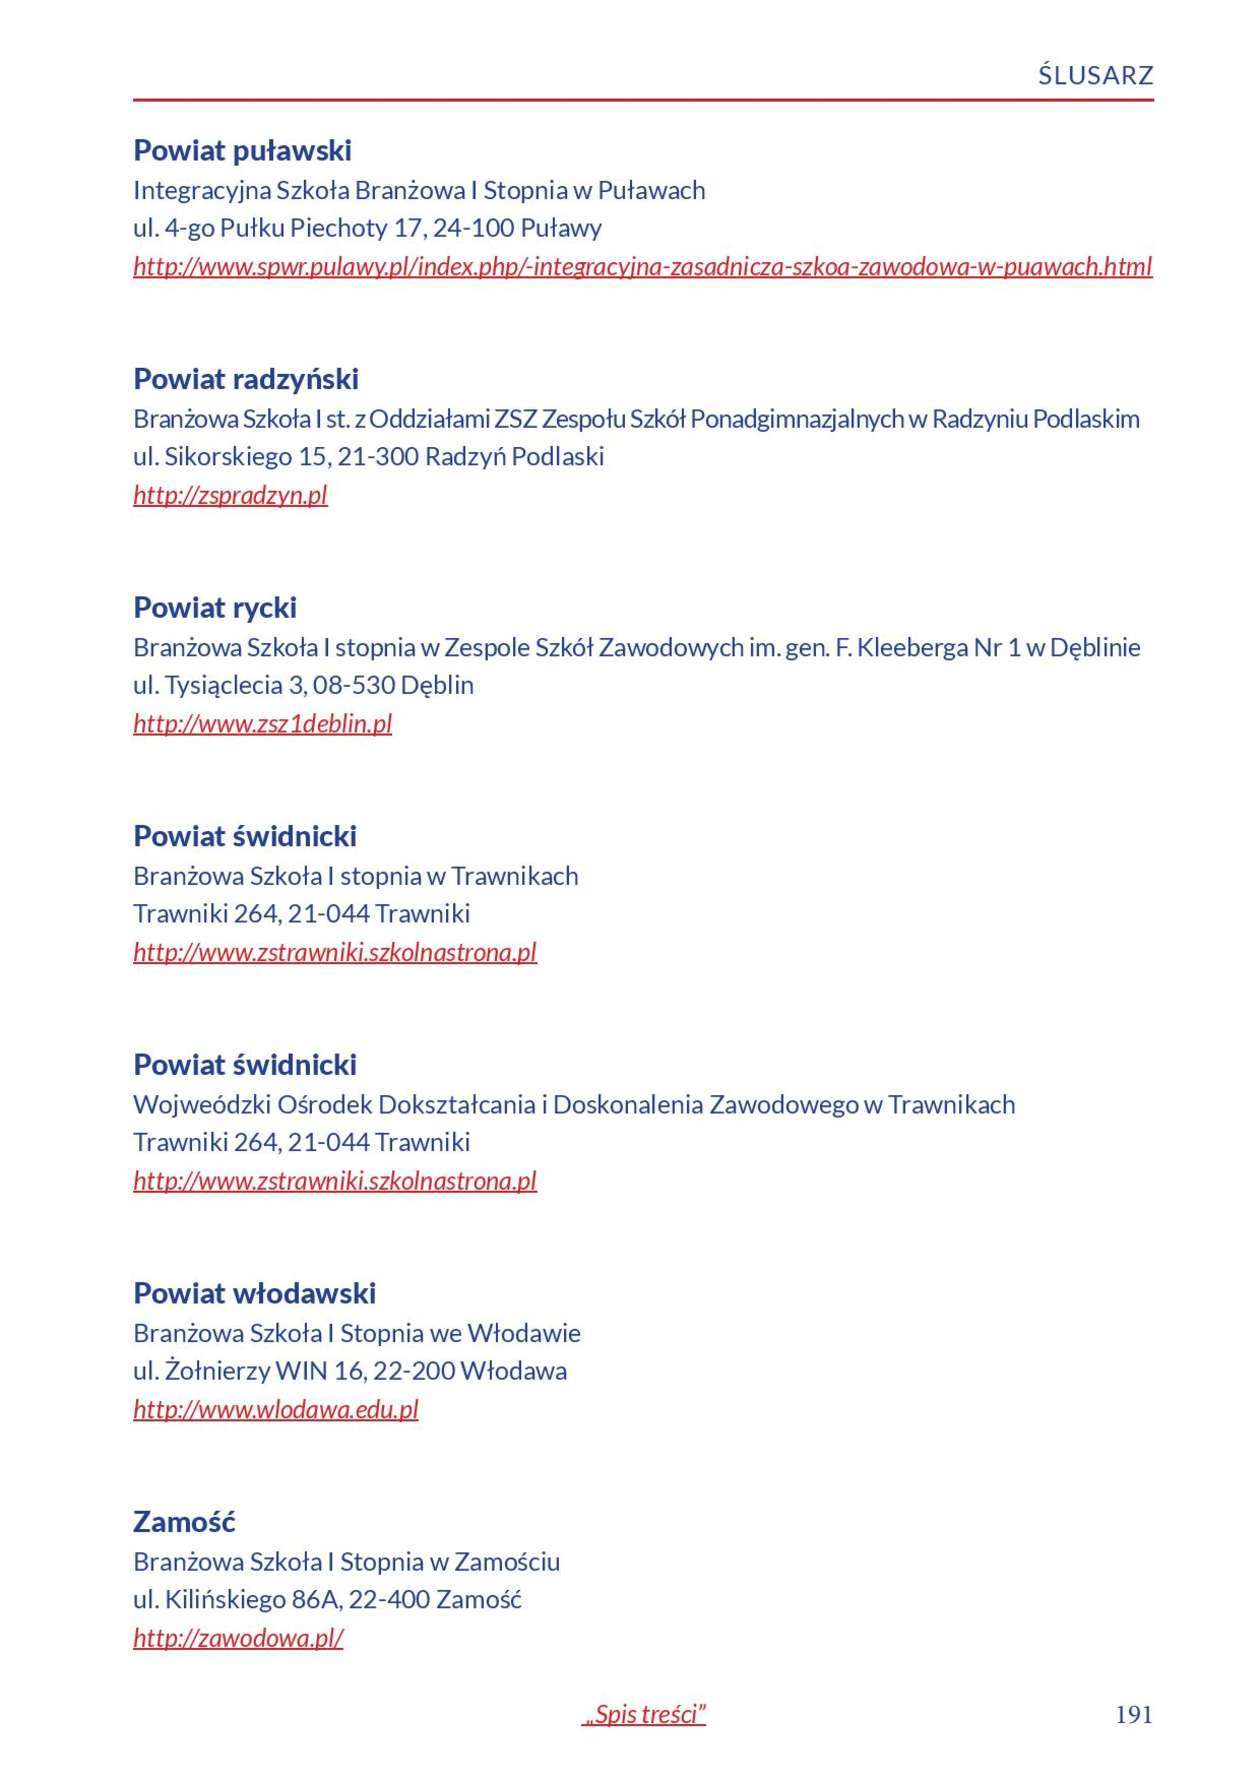  Informator o zawodach 2018/2019 w woj. lubelskim. Część 1 (zdjęcie 189) - Autor: Kuratorium Oświaty w Lublinie